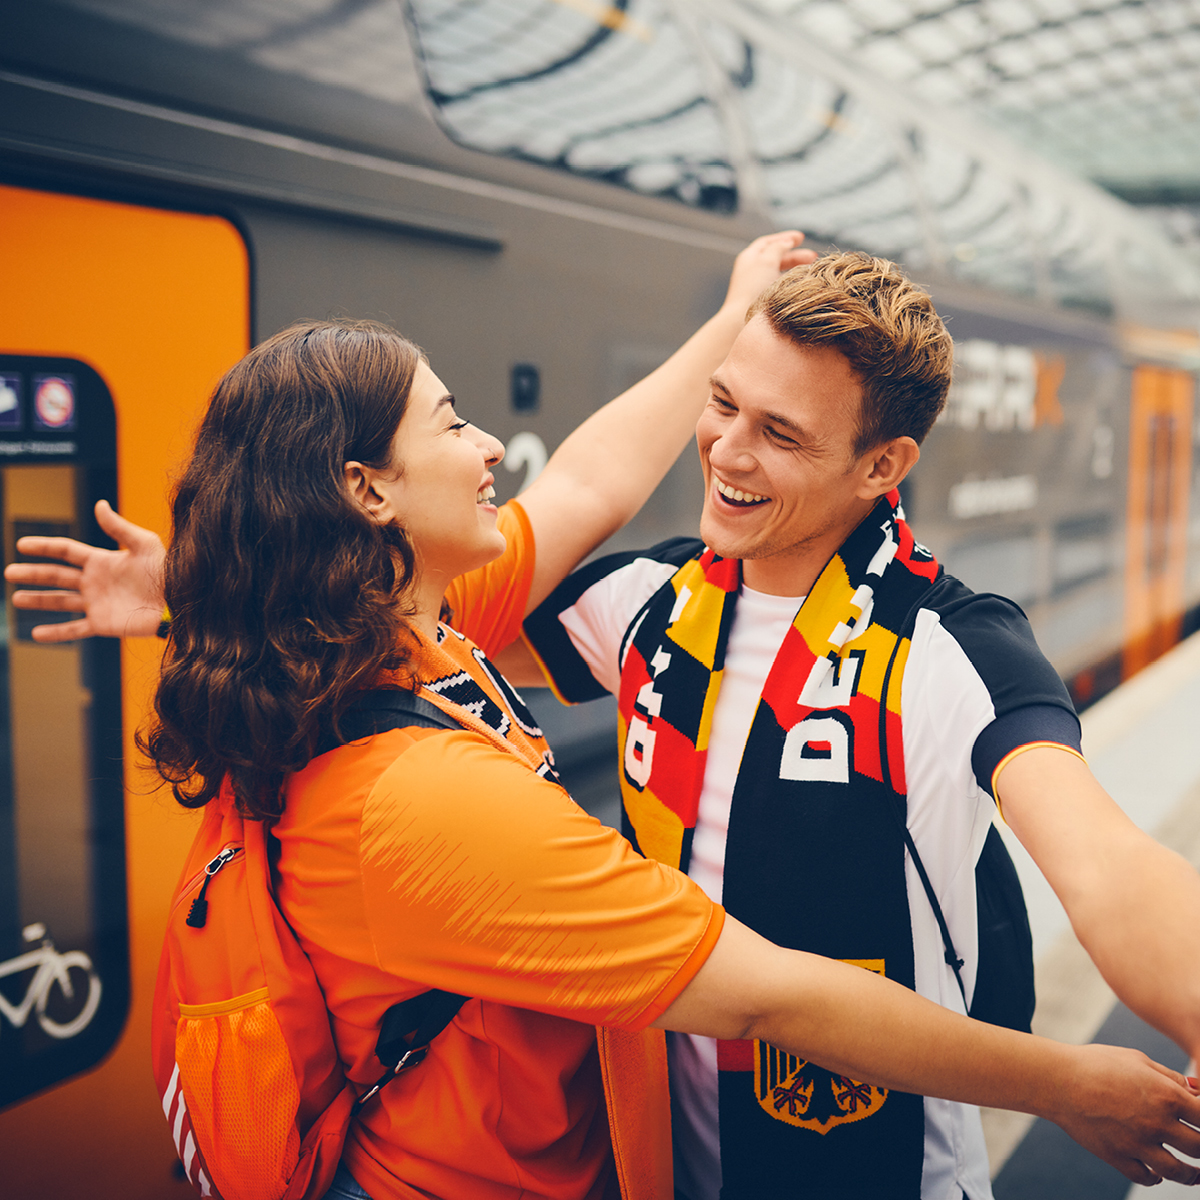 Zwei Fußball-Fans umarmen sich am Bahnsteig.